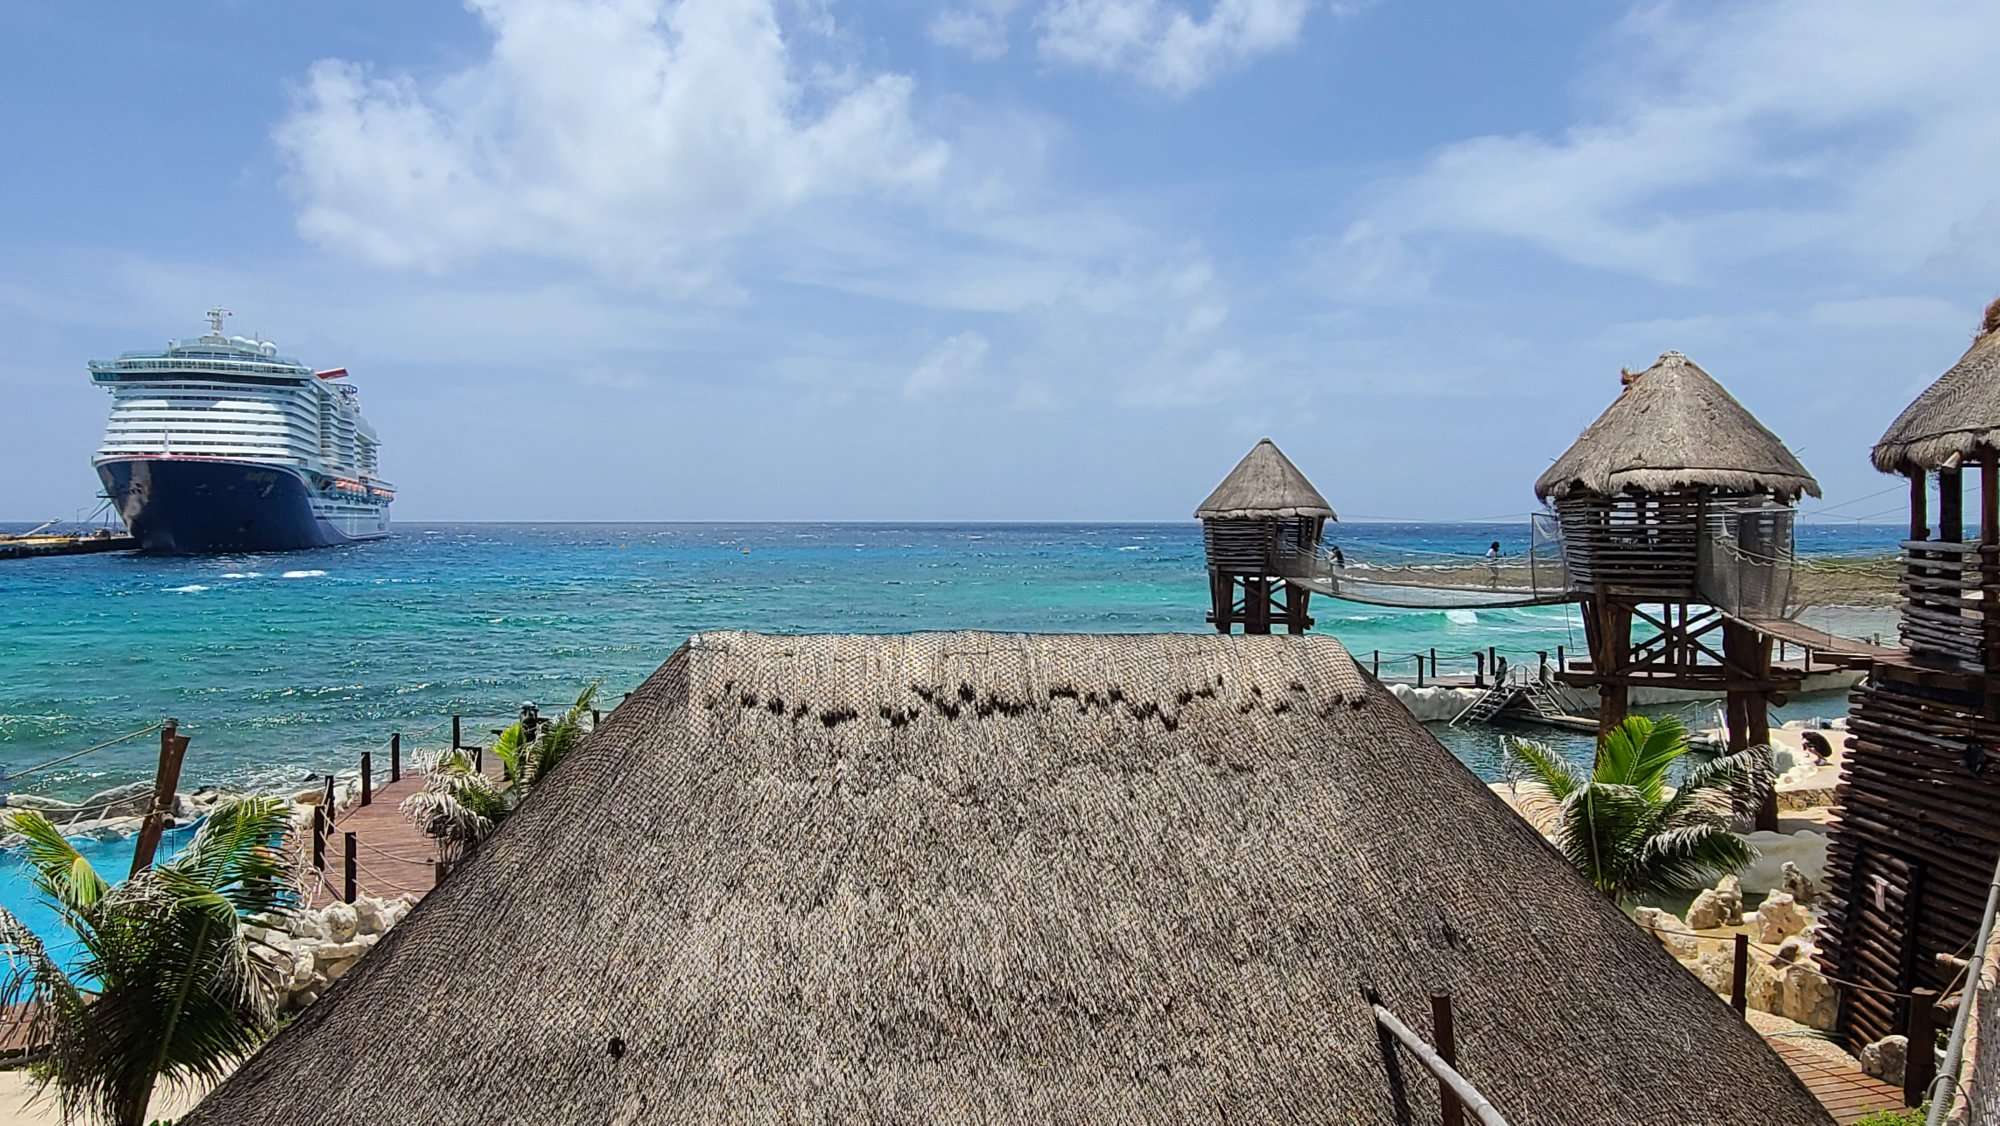 costa maya cruise ship in port with huts along beach